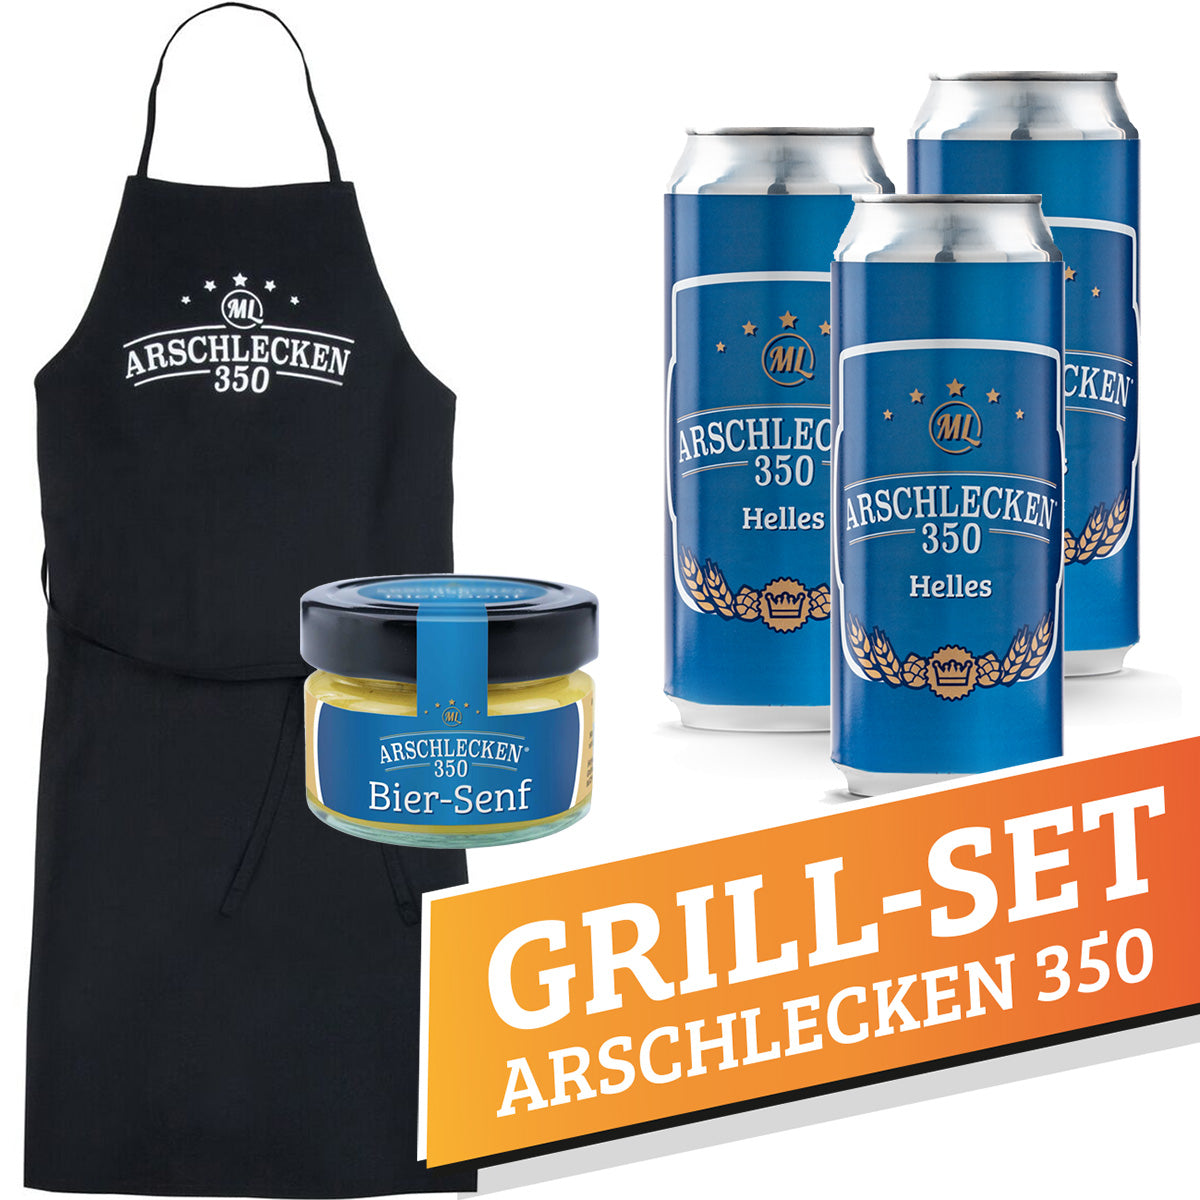 Grill-Set Arschlecken350 1x Arschlecken350 Schürze mit 3 Dosen Arschlecken 350 + Biersenf